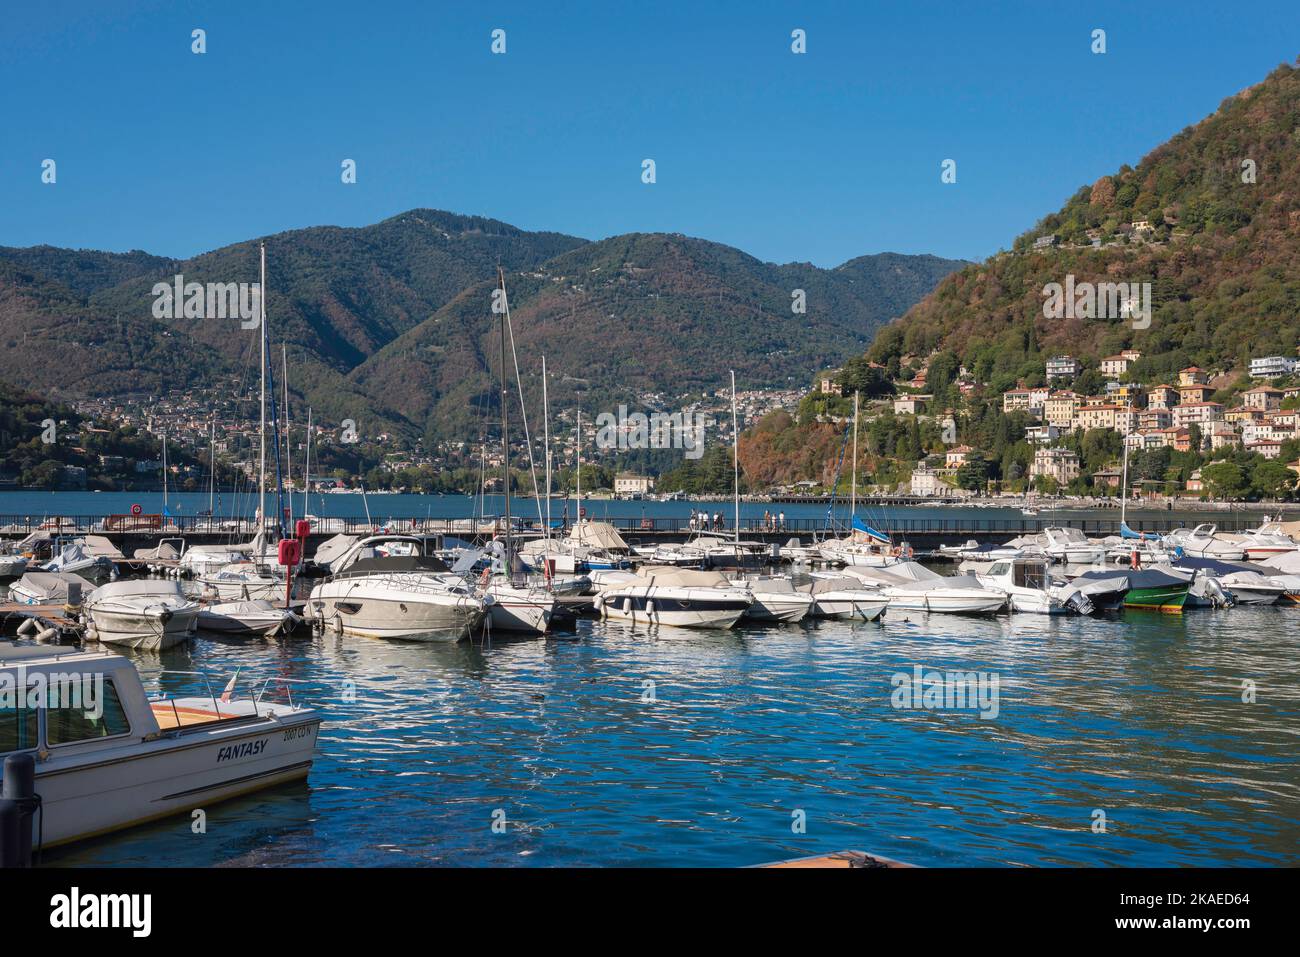 Porto turistico di Como, vista in estate delle barche da diporto ormeggiate nel porto turistico di Como, Lago di Como, Lombardia, Italia Foto Stock